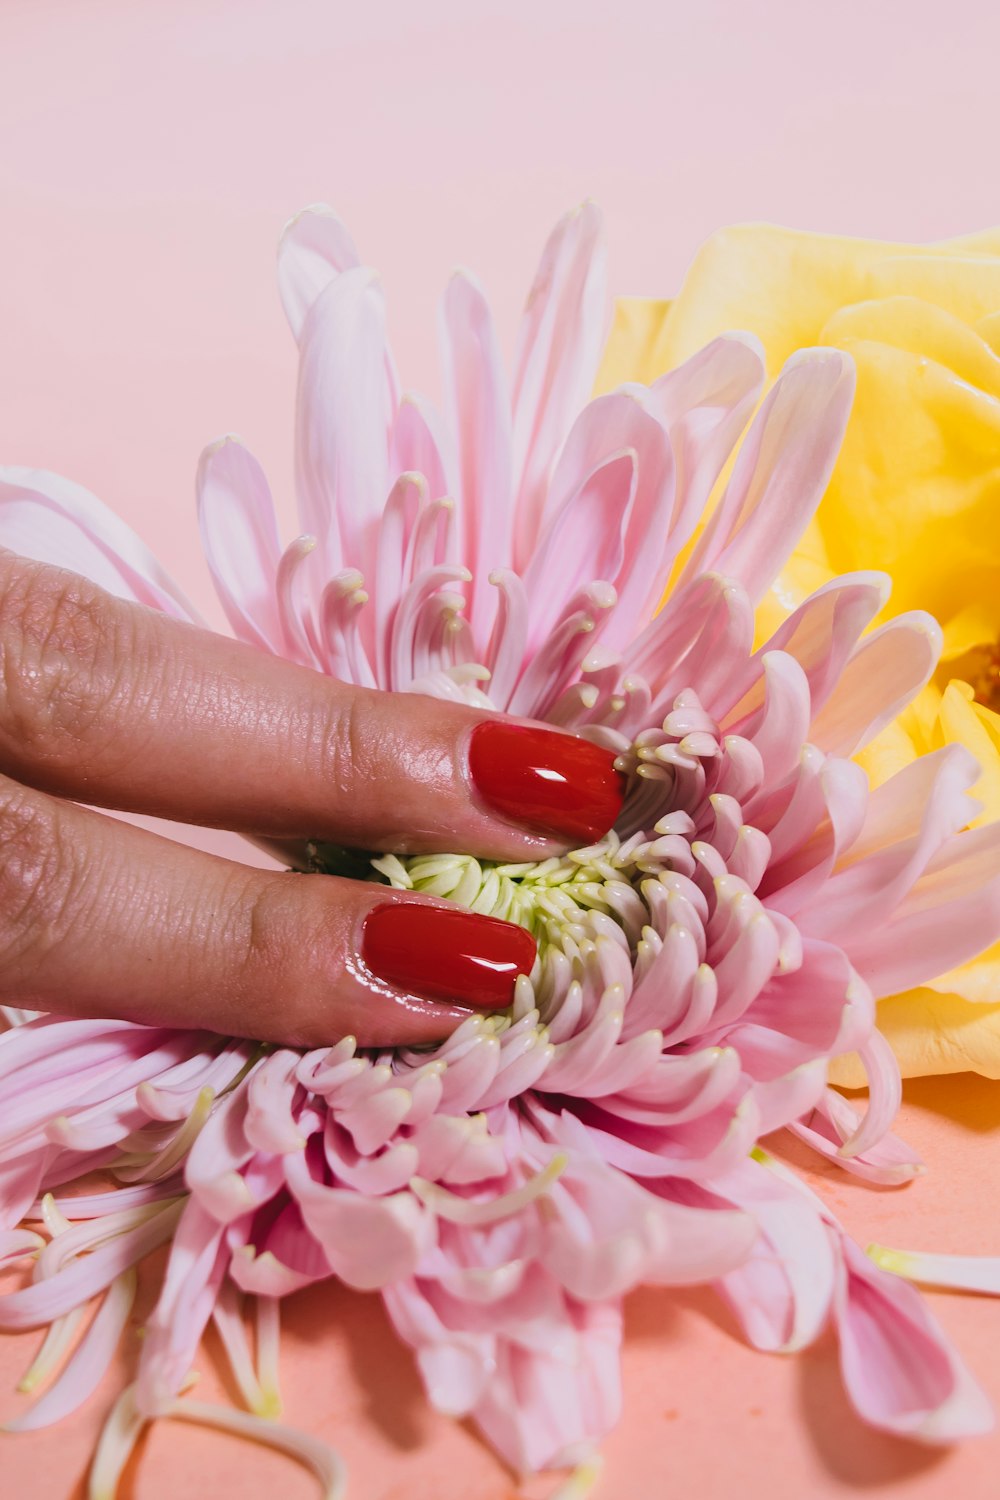 persona presionando una flor de crisantemo sobre una superficie rosada